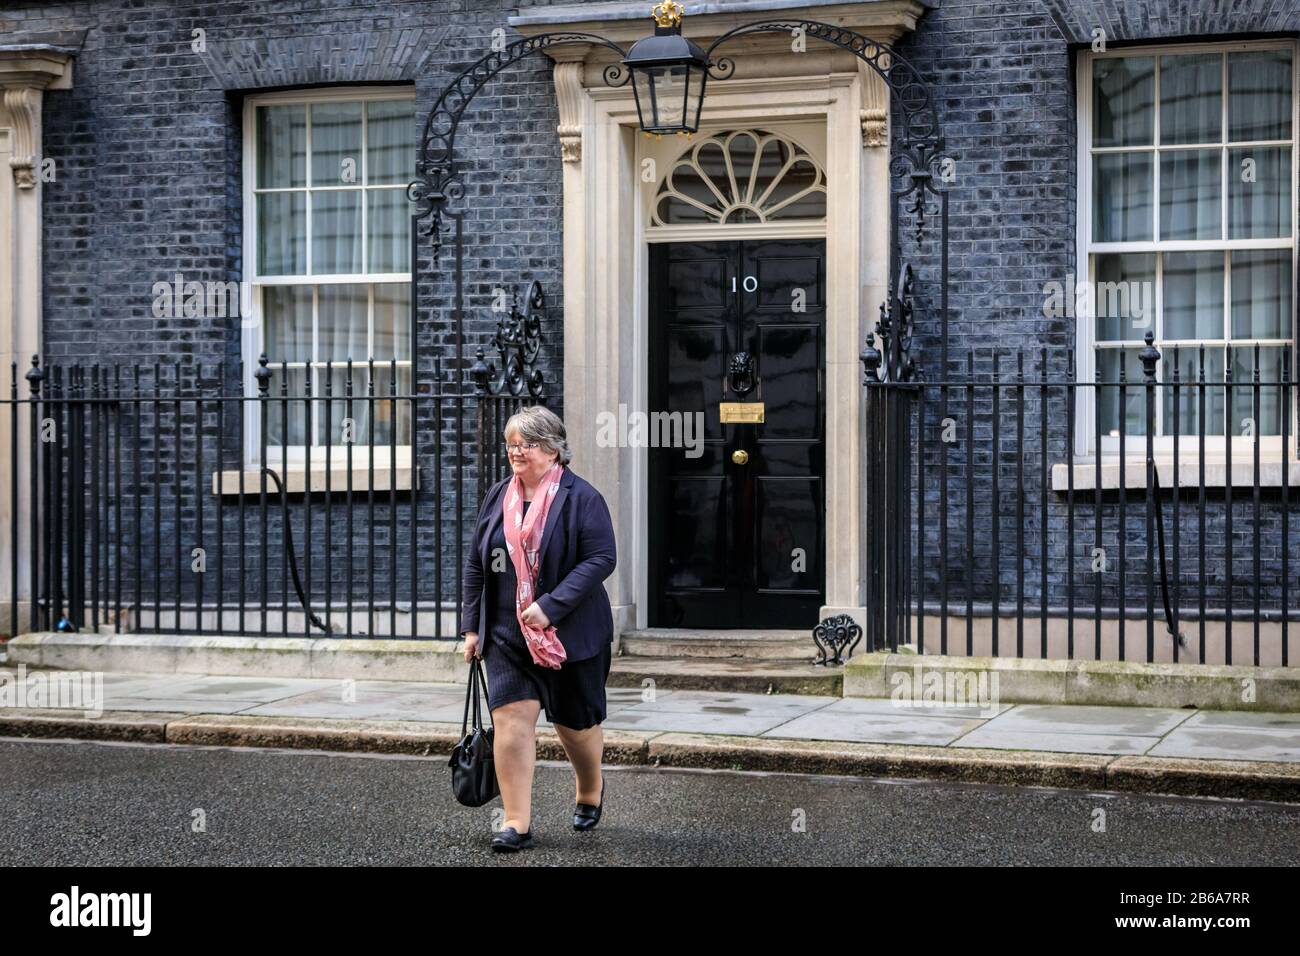 Downing Street, Londra, Thérèse Coffey lascia il n. 10, rimane Segretario di Stato presso il Dipartimento Per Il Lavoro e le pensioni nel re-shuff governo Foto Stock